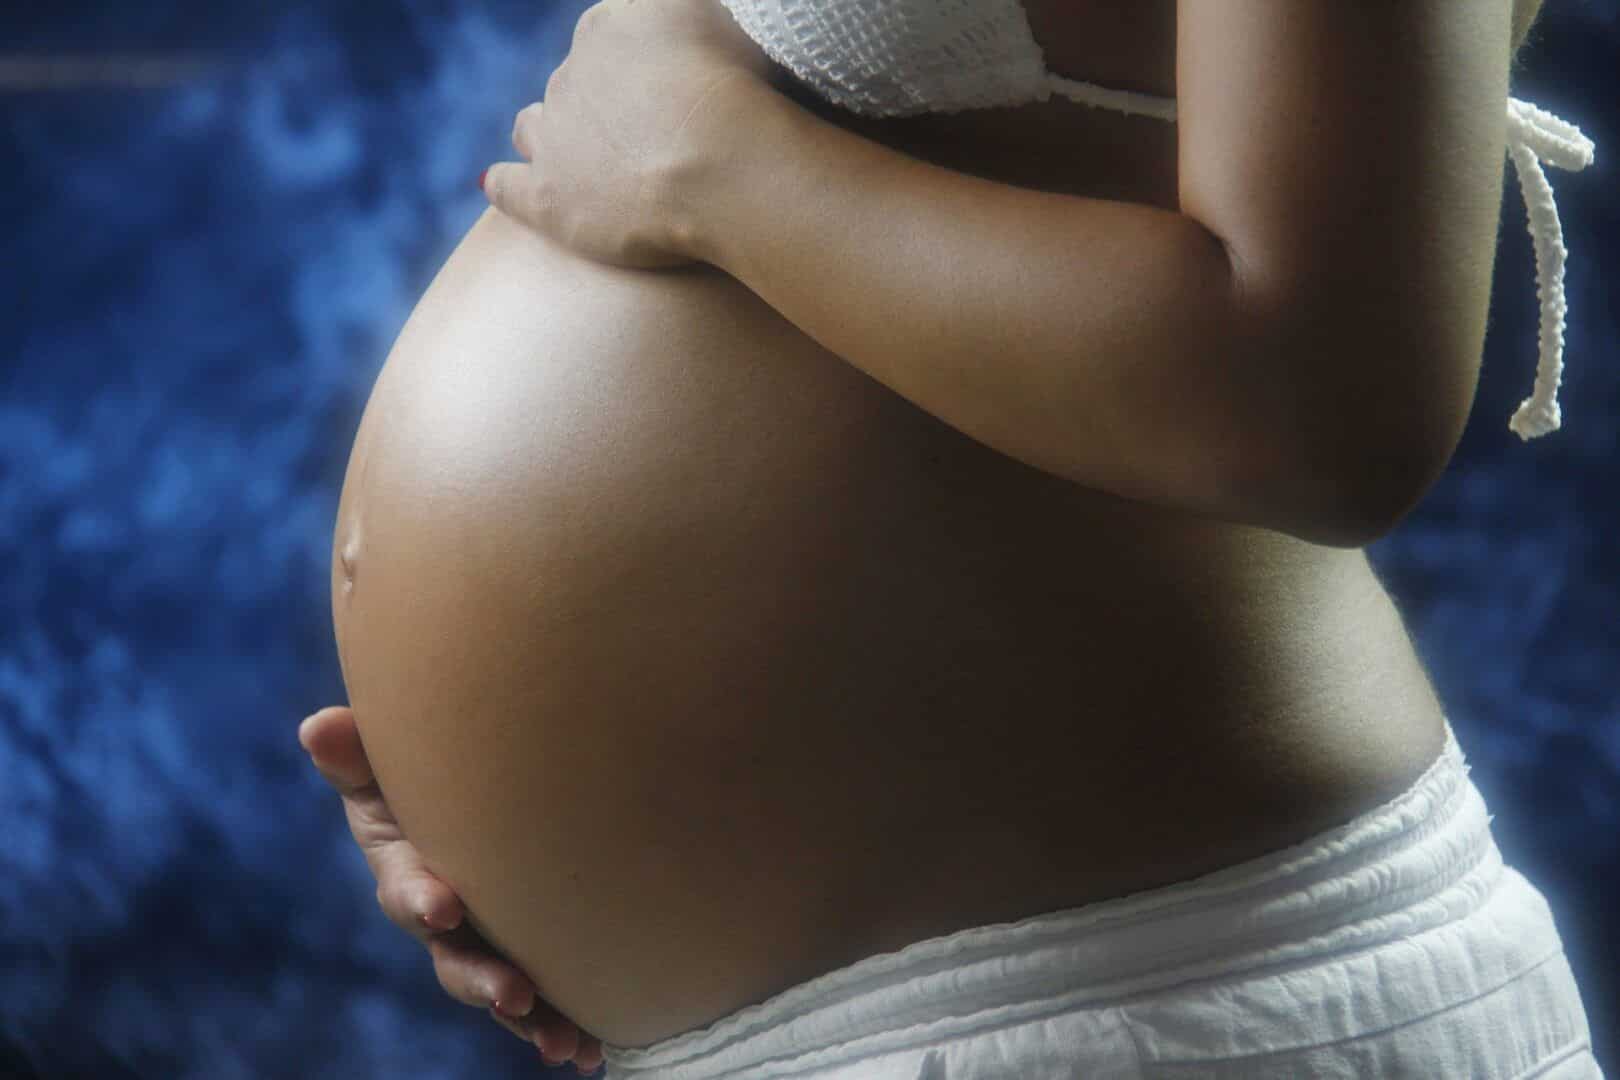 remedios que gravida nao pode tomar veja as categorias de risco 5 - Medicamentos que las mujeres embarazadas no pueden tomar: categorías de riesgo